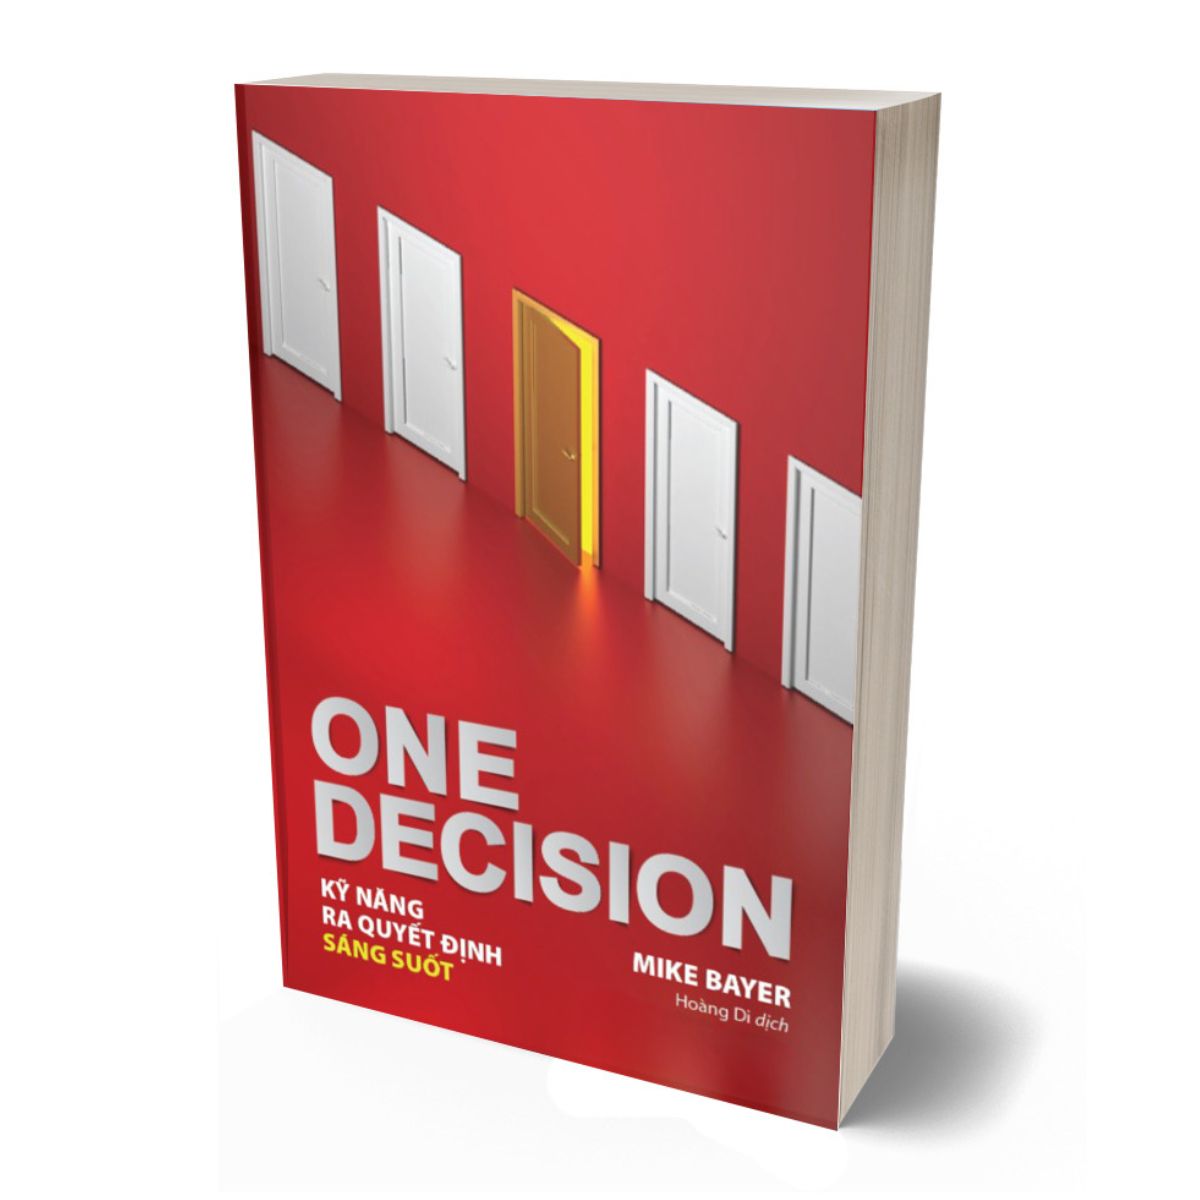 Sách - One Decision - Kỹ Năng Ra Quyết Định Sáng Suốt